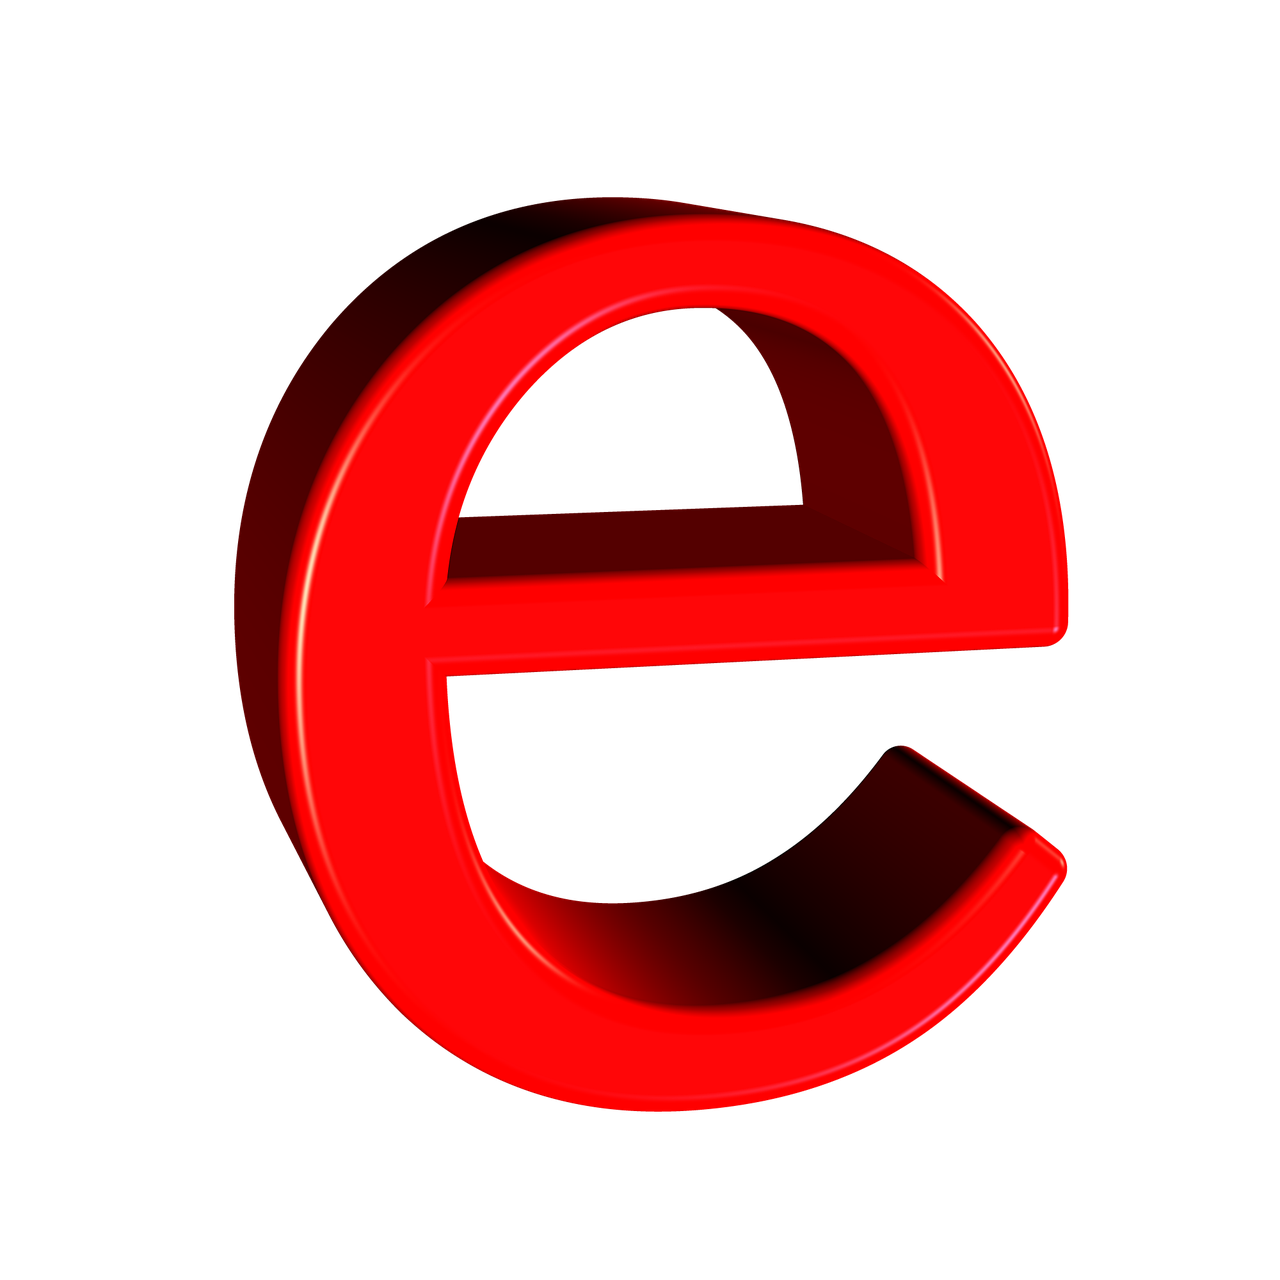 字母 E